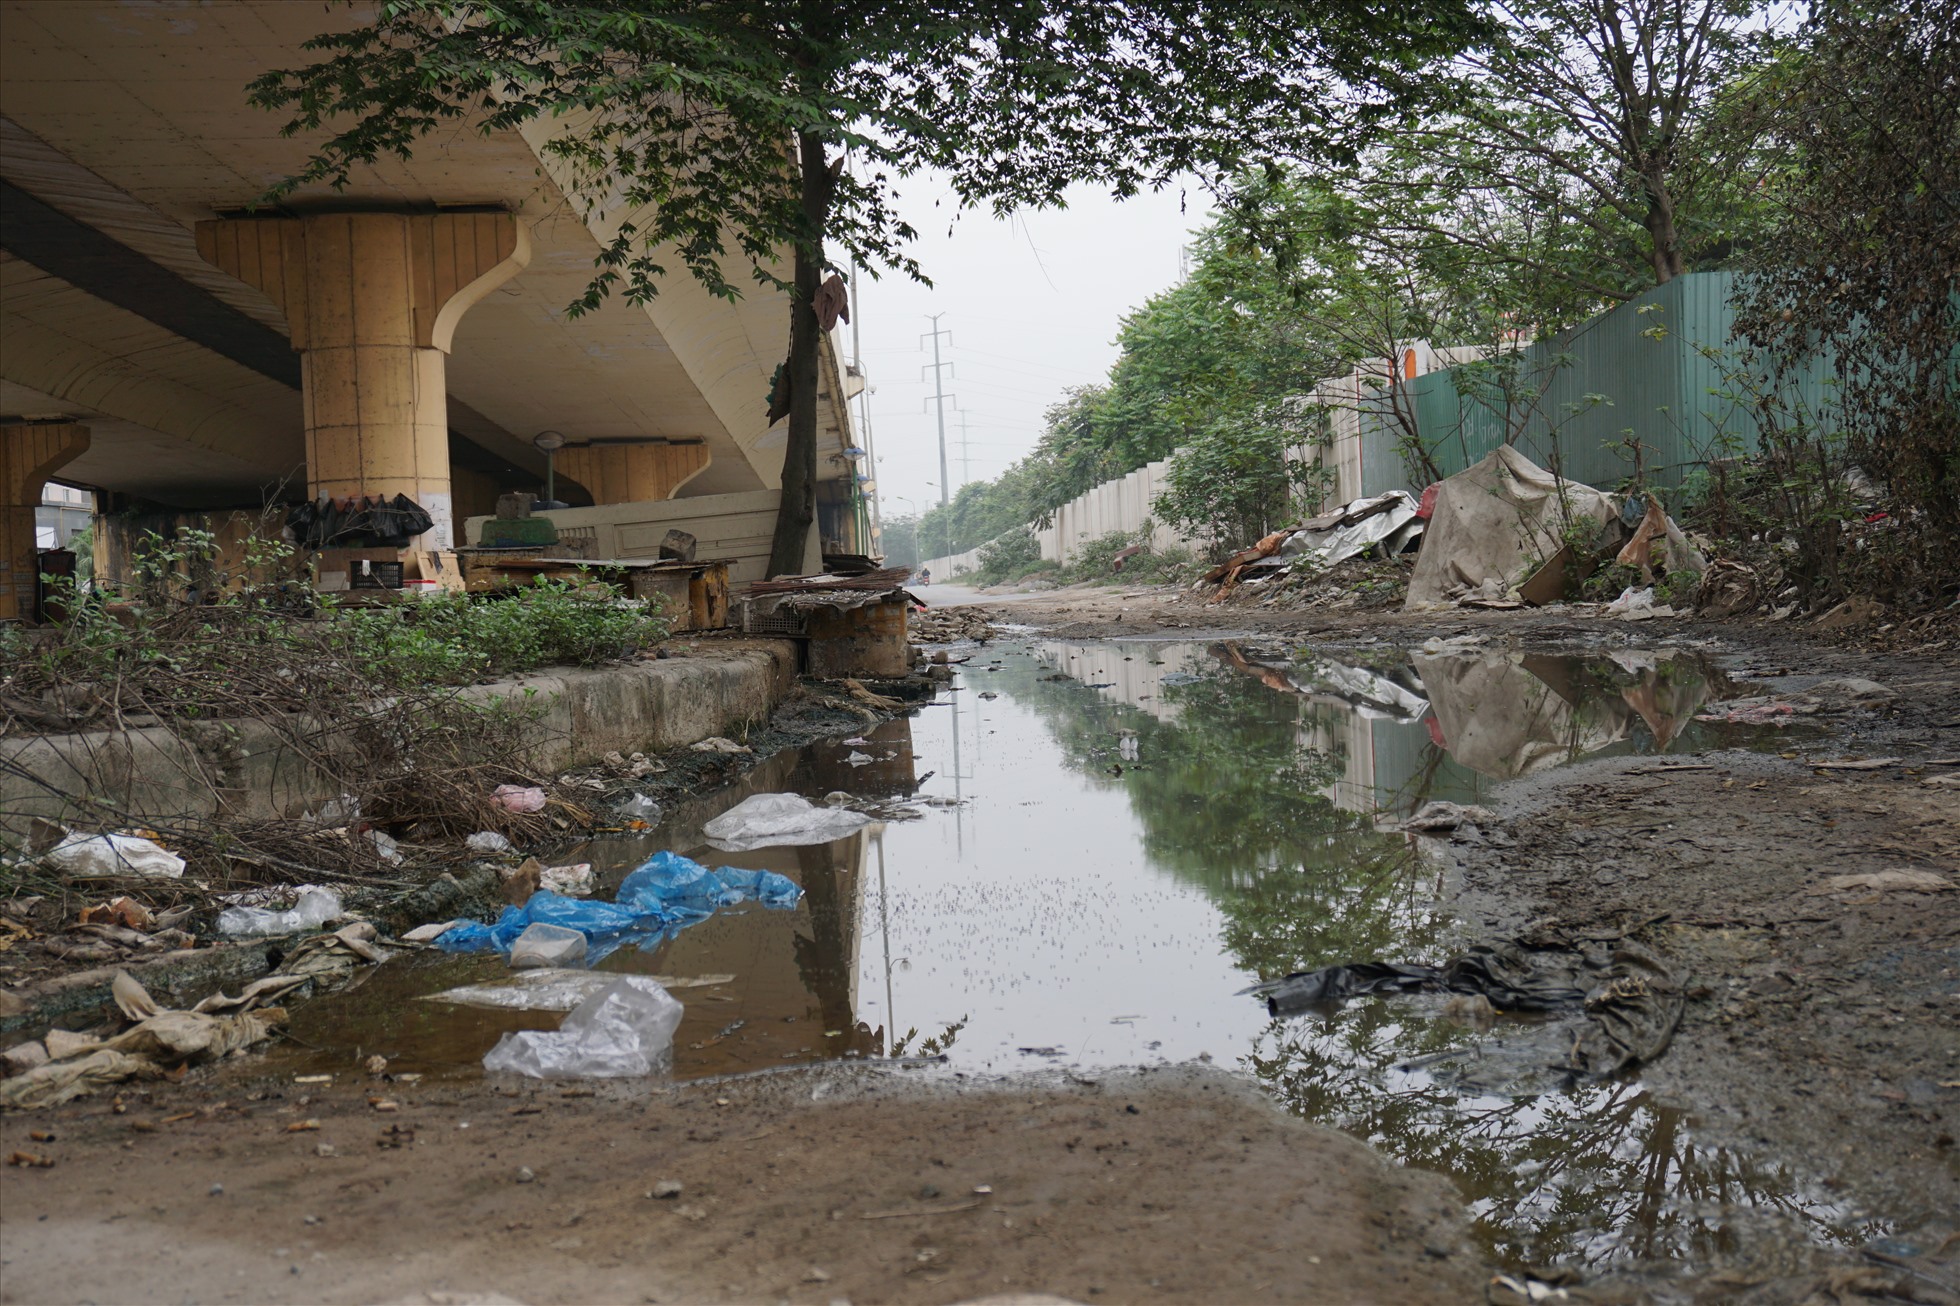 Khu vực gầm cầu vượt Dương Nội - Yên Nghĩa thường xuyên tổ chức họp chợ dân sinh vào mỗi buổi sáng. Một số tiểu thương vẫn tổ chức giết mổ gia cầm ngay dưới cầu vượt Yên Nghĩa, khiến khu vực này trở nên nhếch nhác, ô nhiễm.